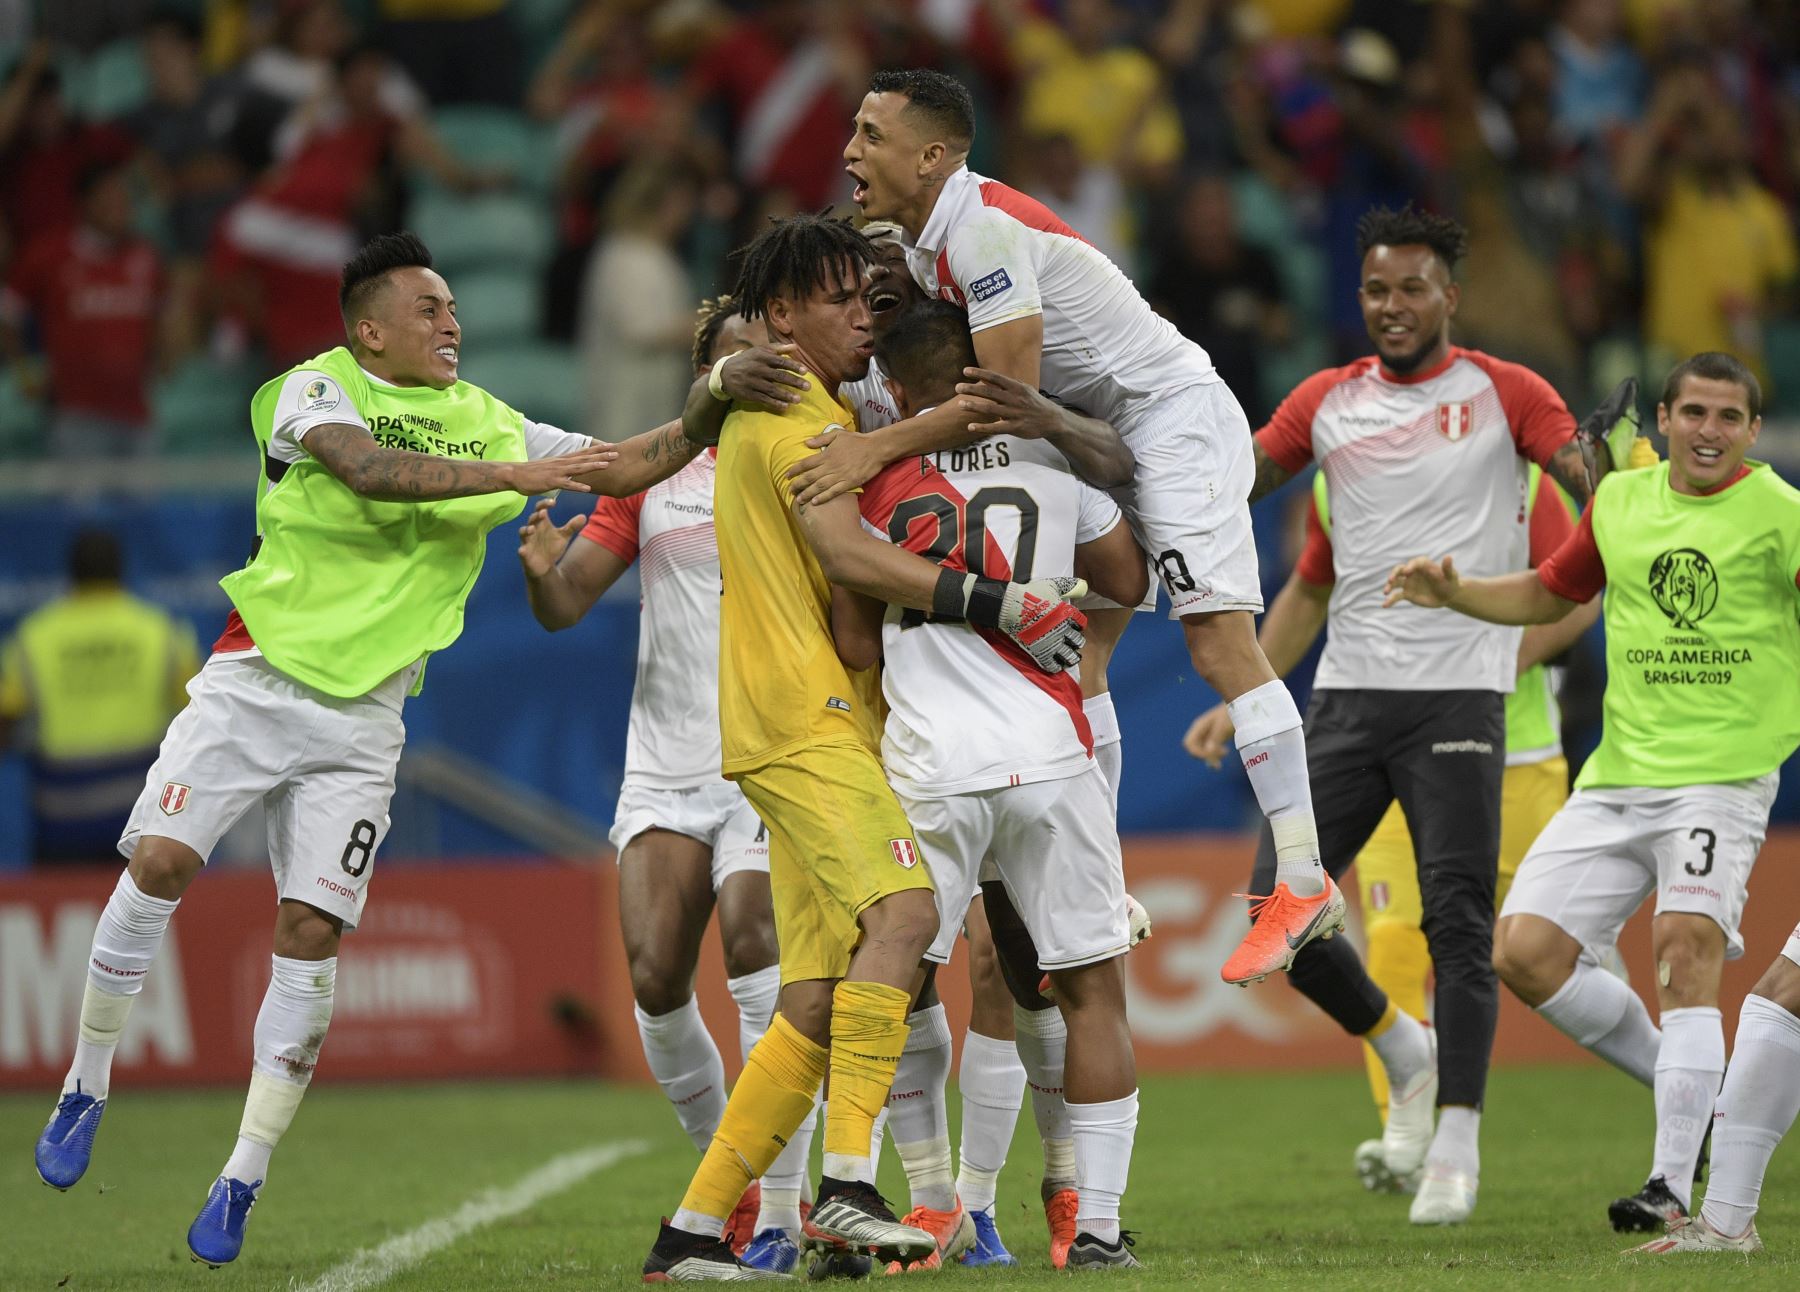 Los jugadores de Perú celebran después de derrotar a Uruguay en el tiroteo de penalización luego de empatar 0-0 durante su partido de cuartos de final del torneo de fútbol de la Copa América en el Fonte Nova Arena en Salvador, Brasil.
Foto: AFP